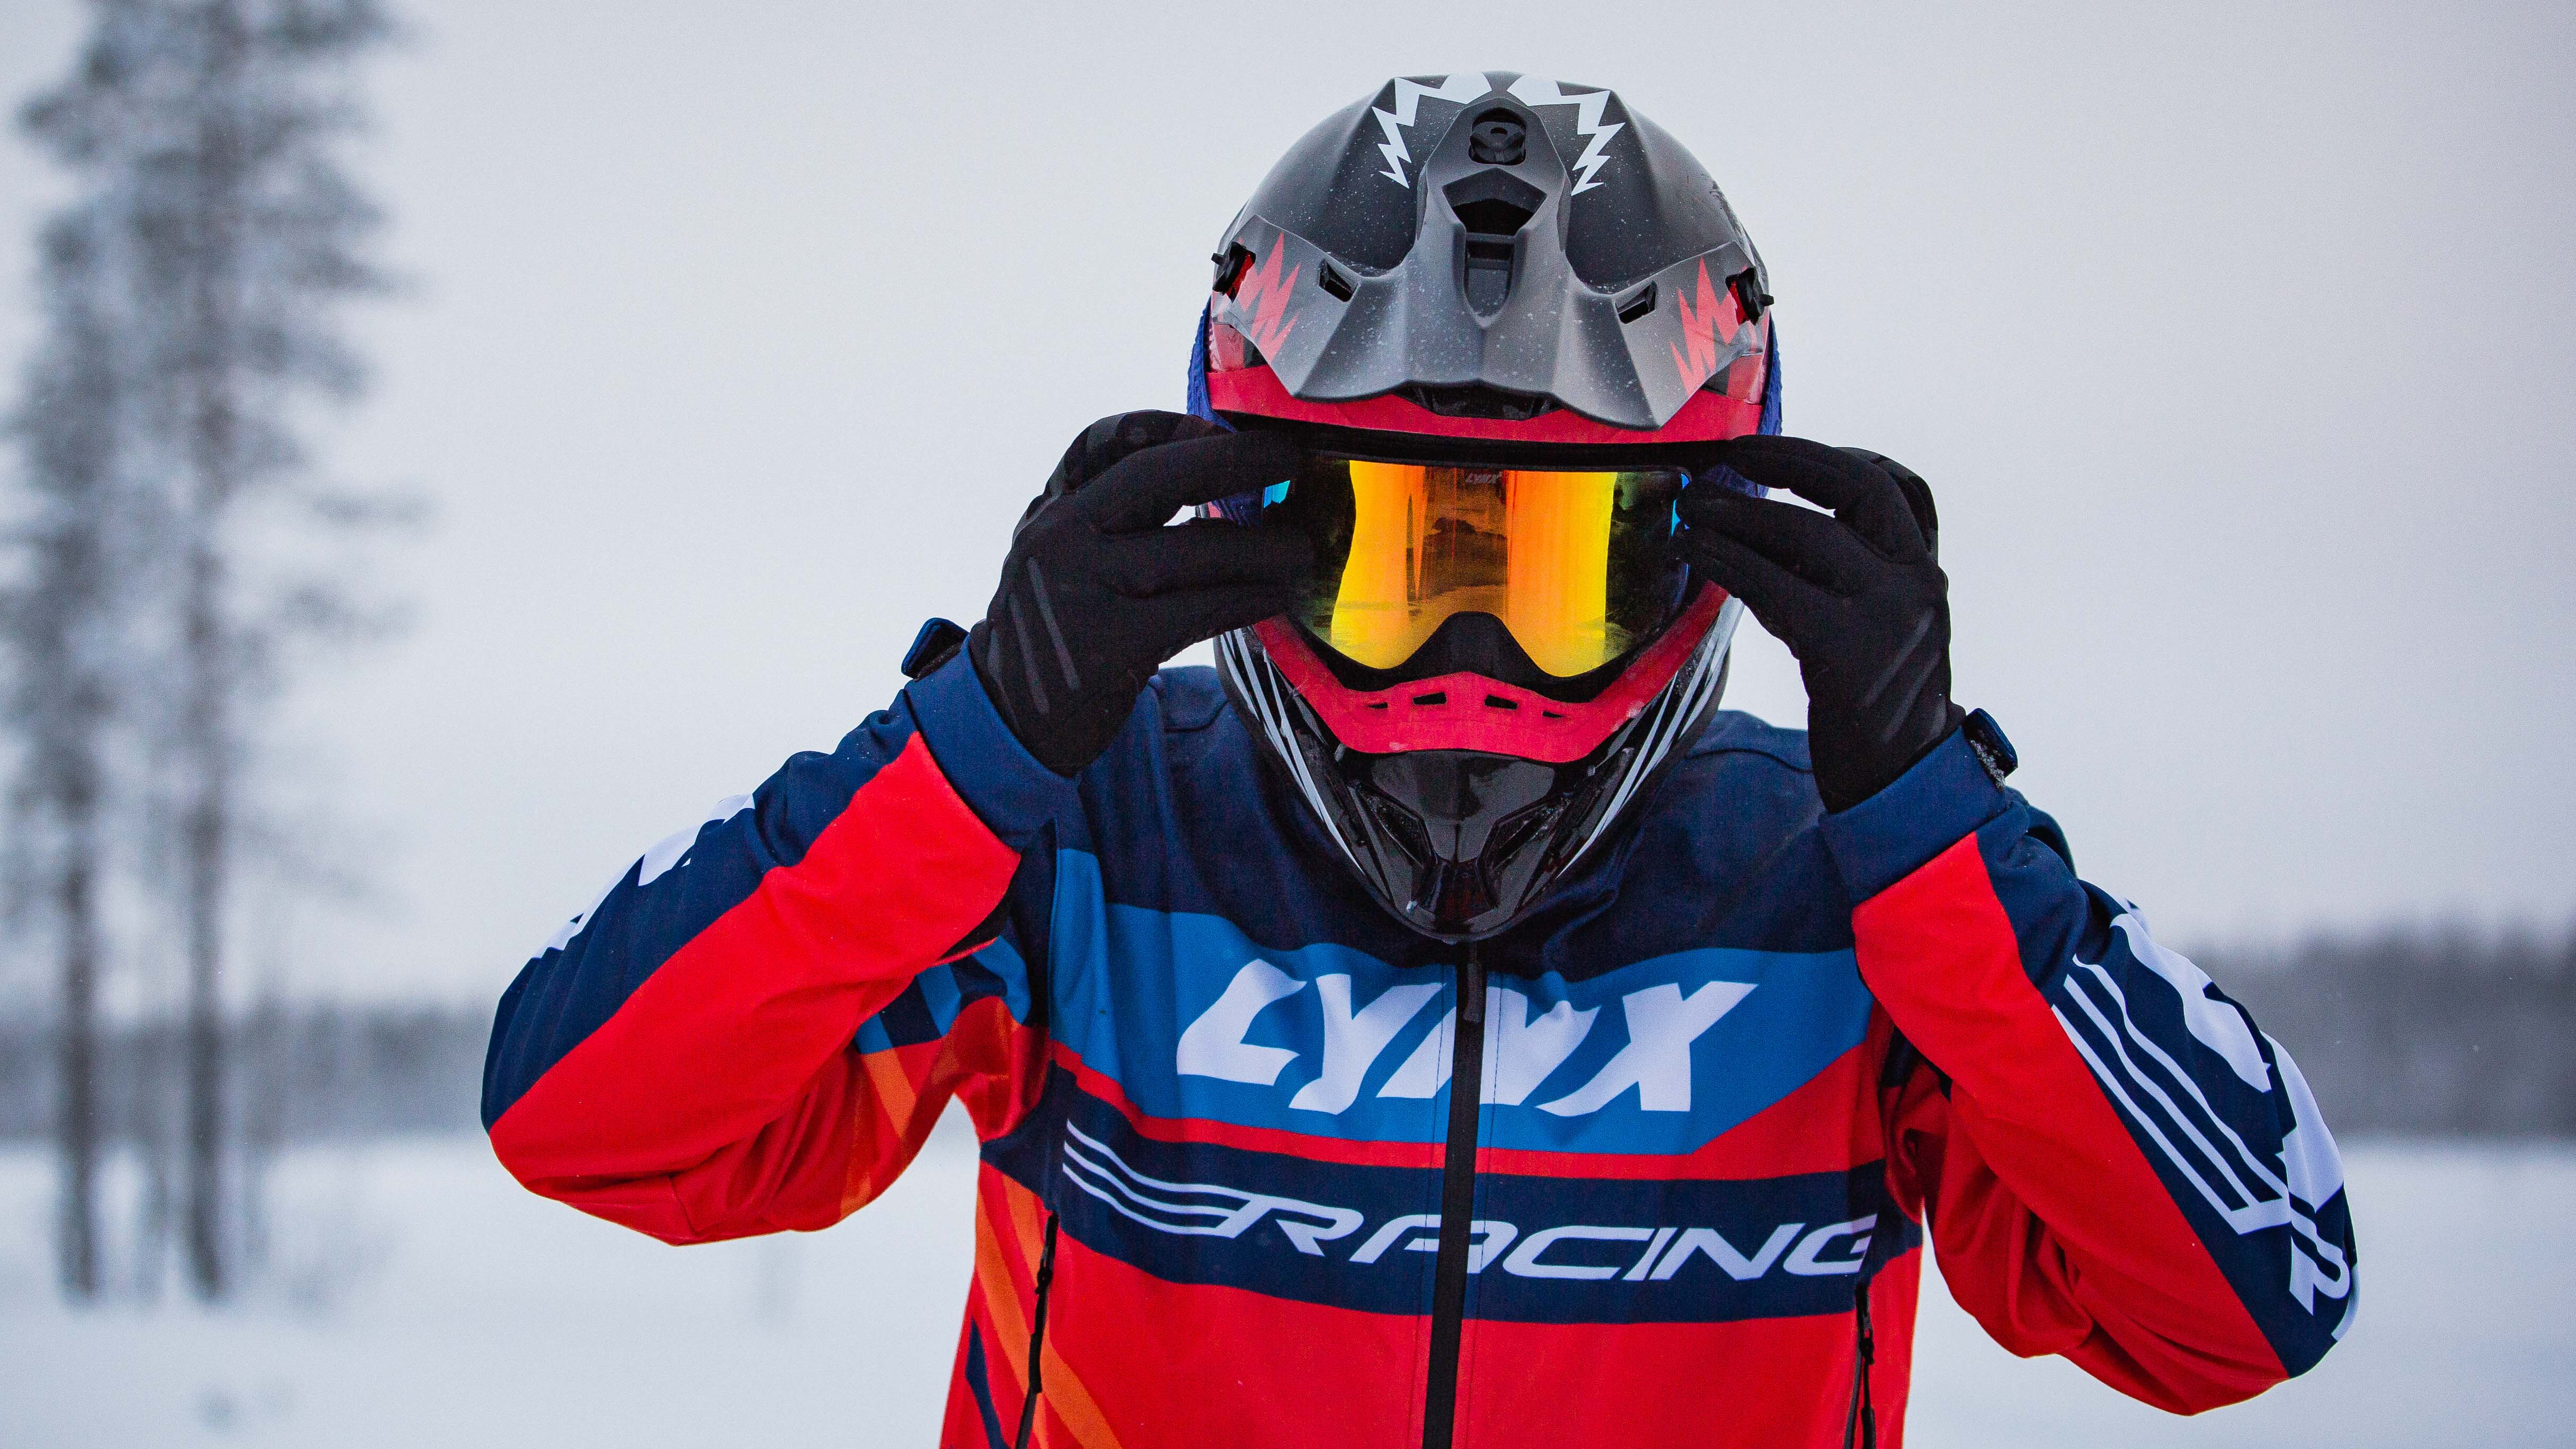 Lynx Racing-förare sätter på sig skyddsglasögon